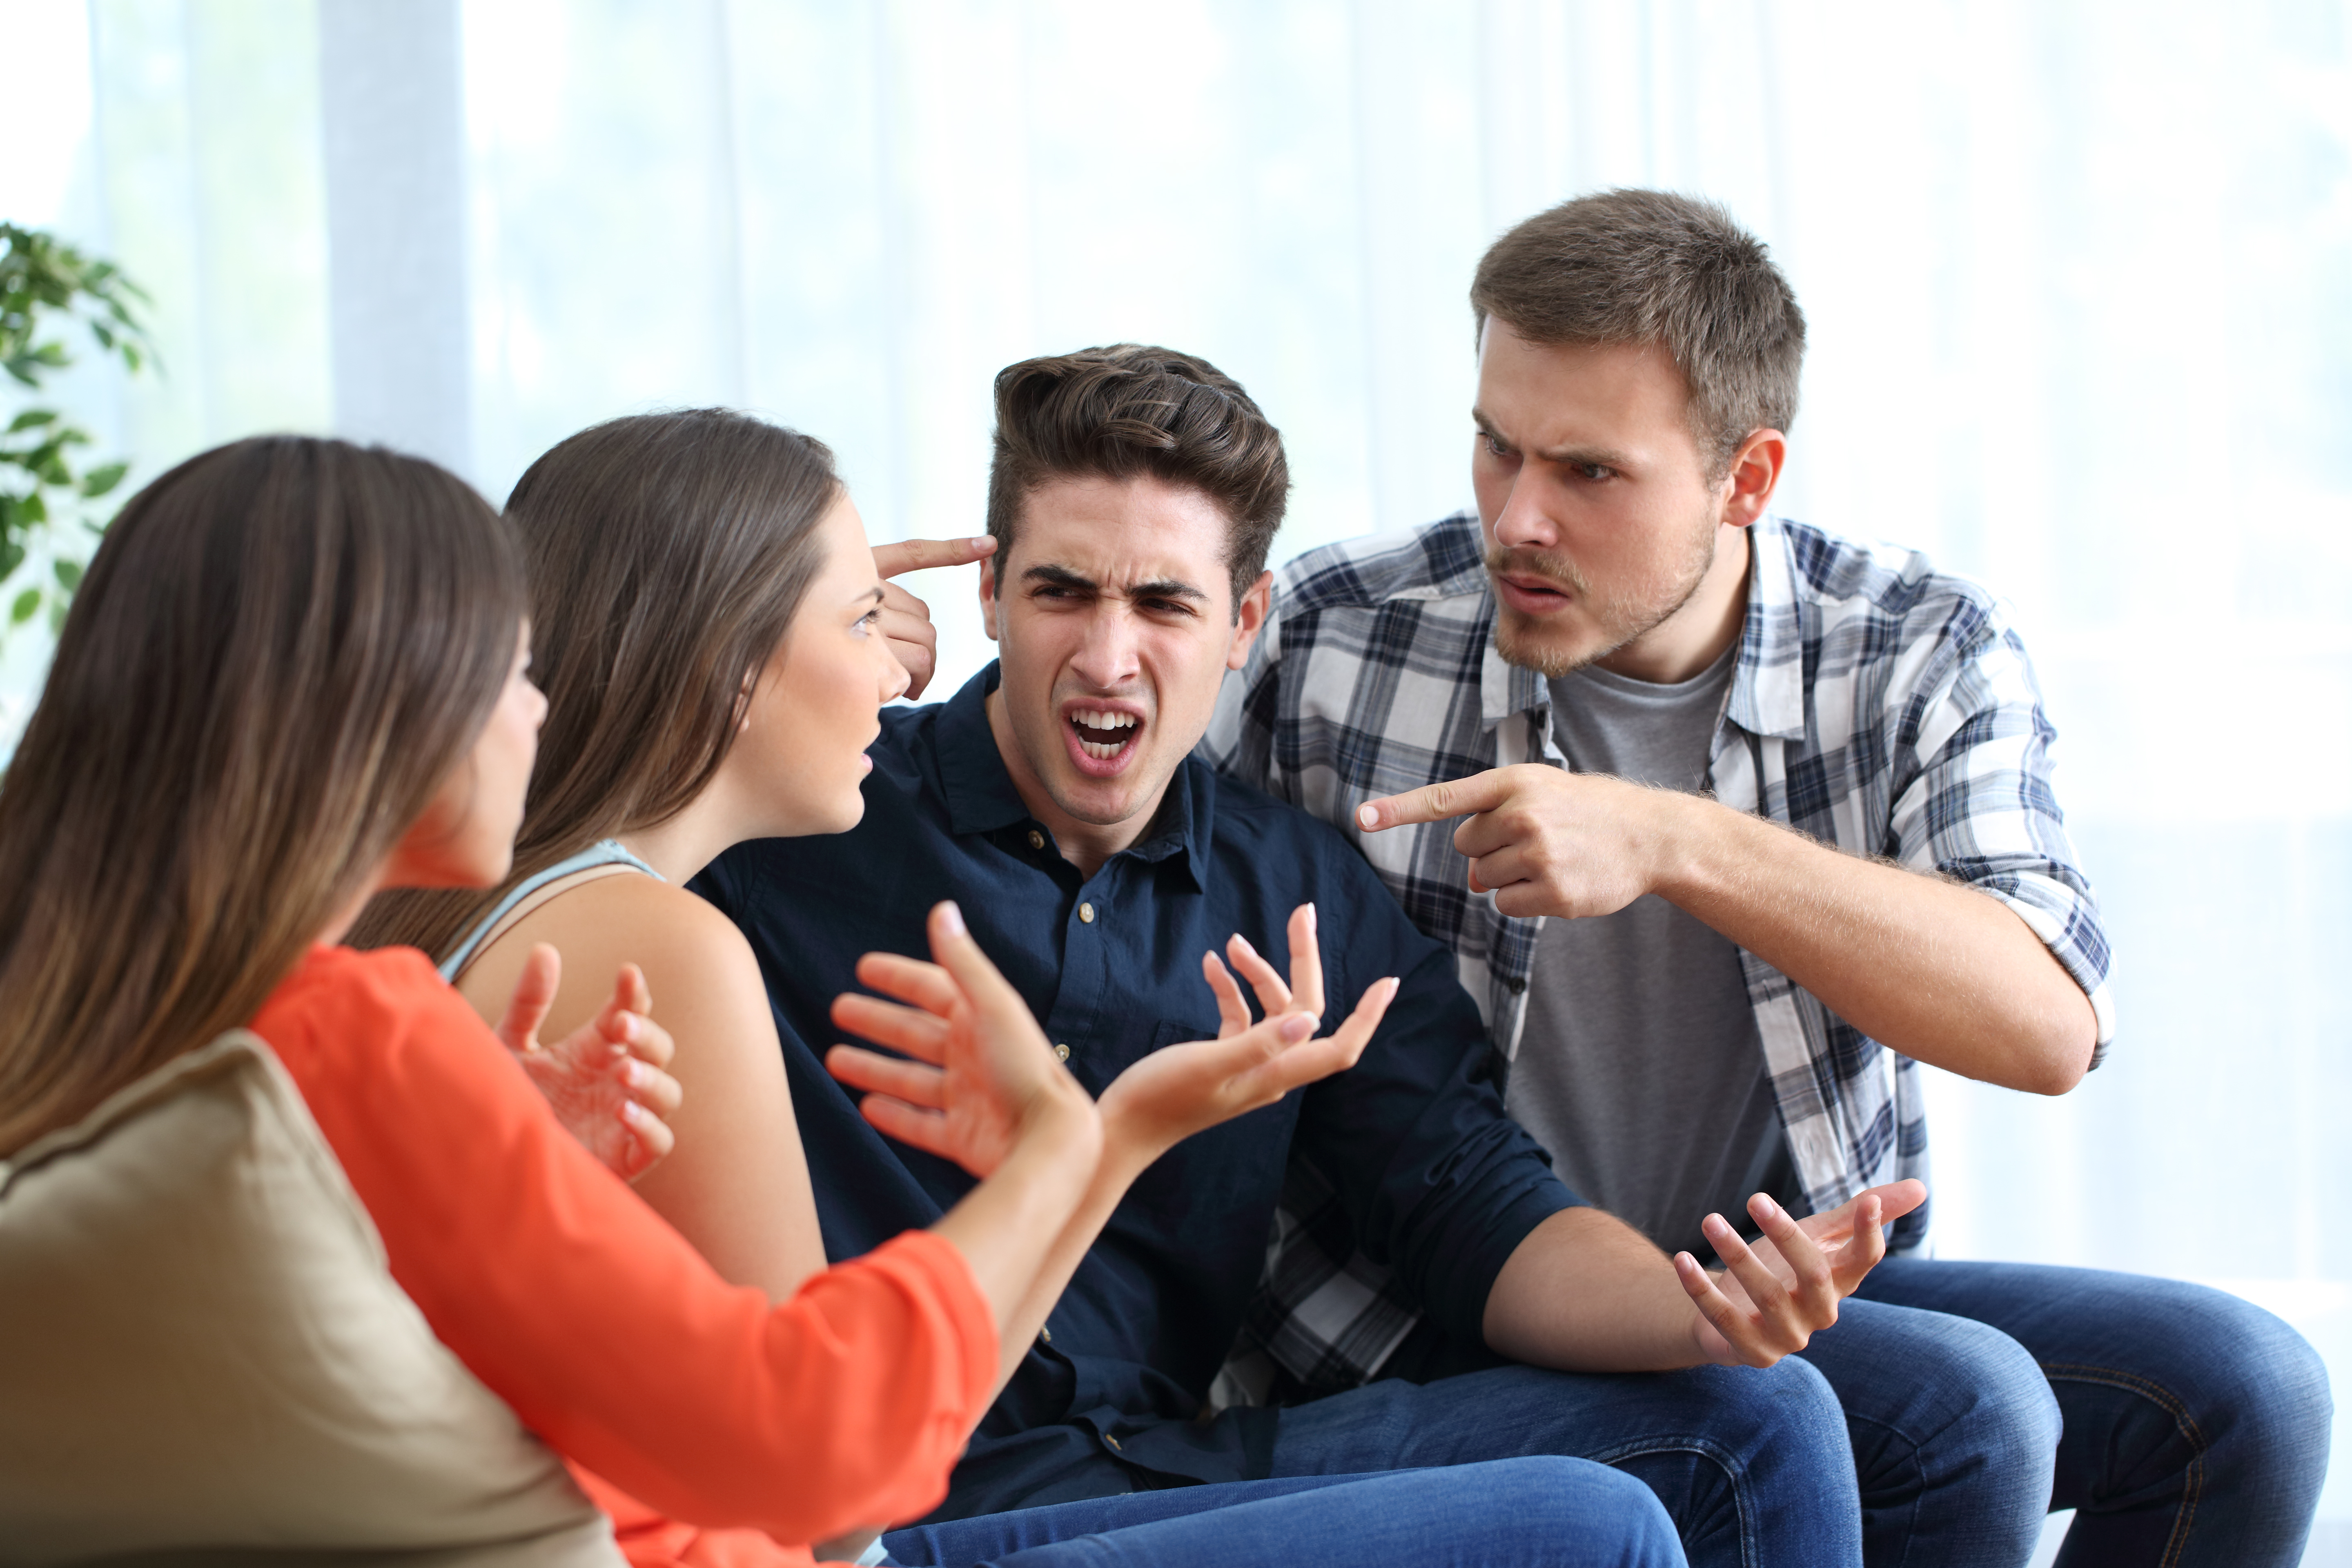 Quatre amis en colère qui se disputent à la maison | Source : Getty Images